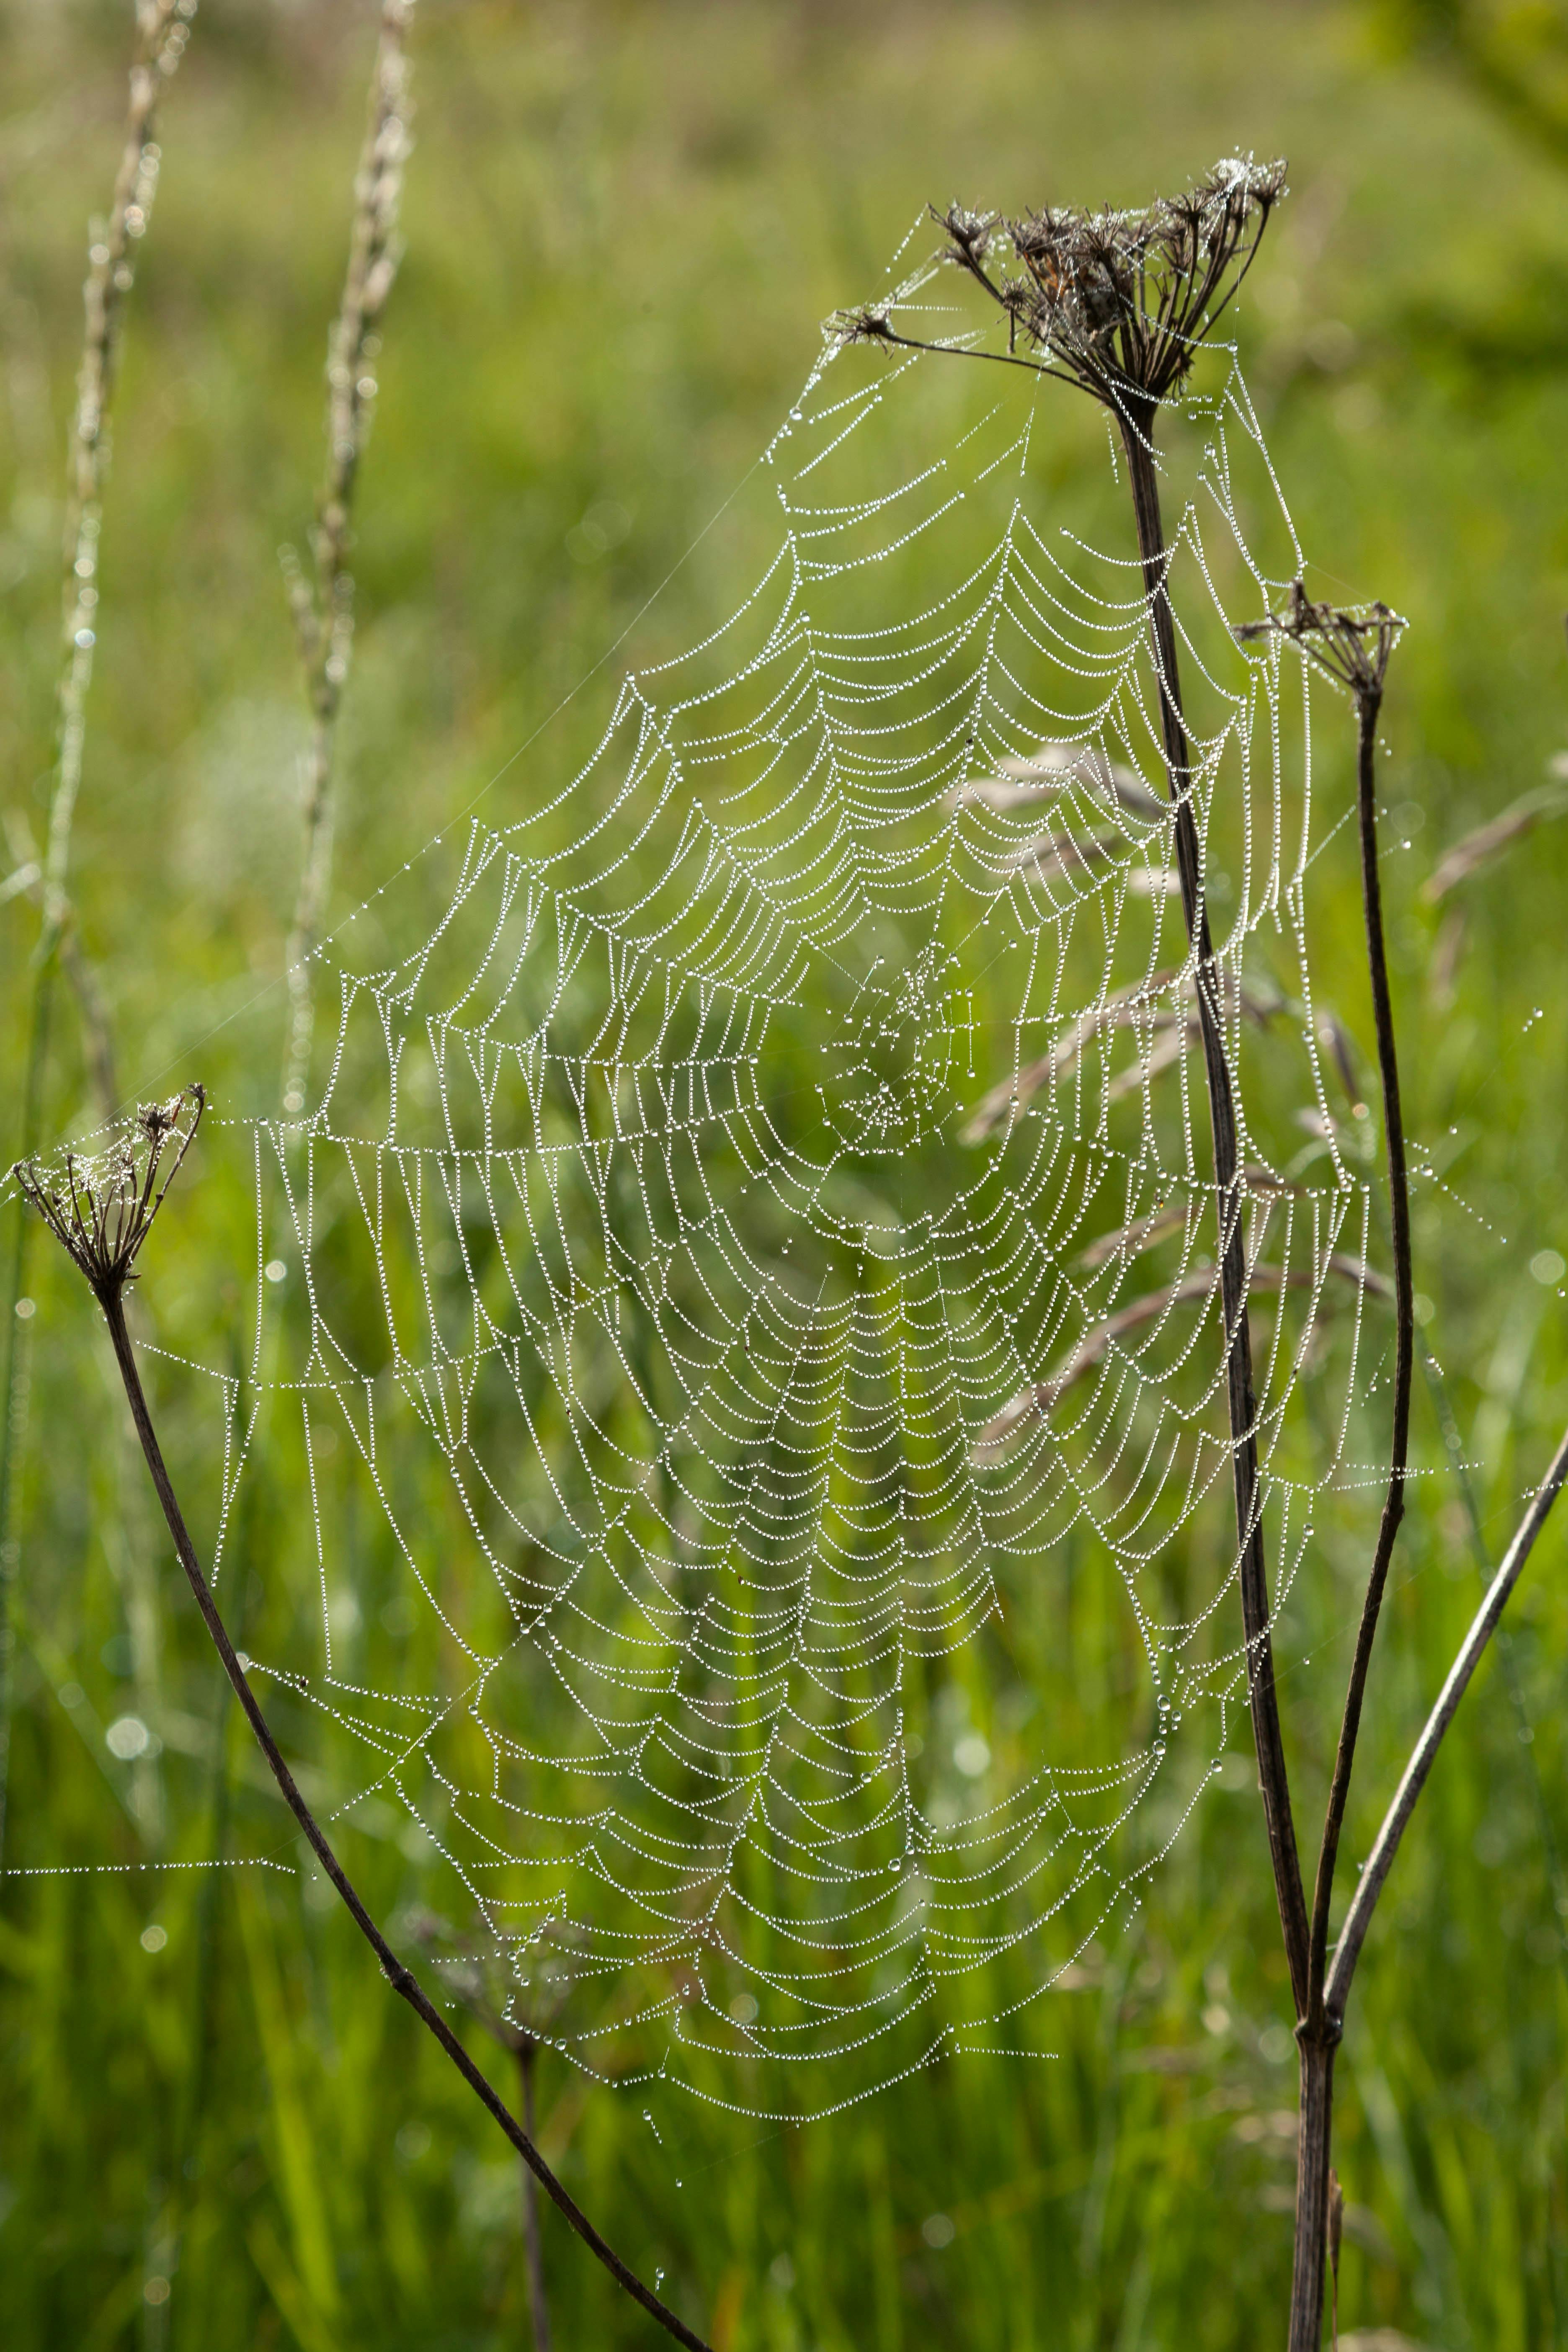 Mạng nhện  377707 Ảnh vector và hình chụp có sẵn  Shutterstock